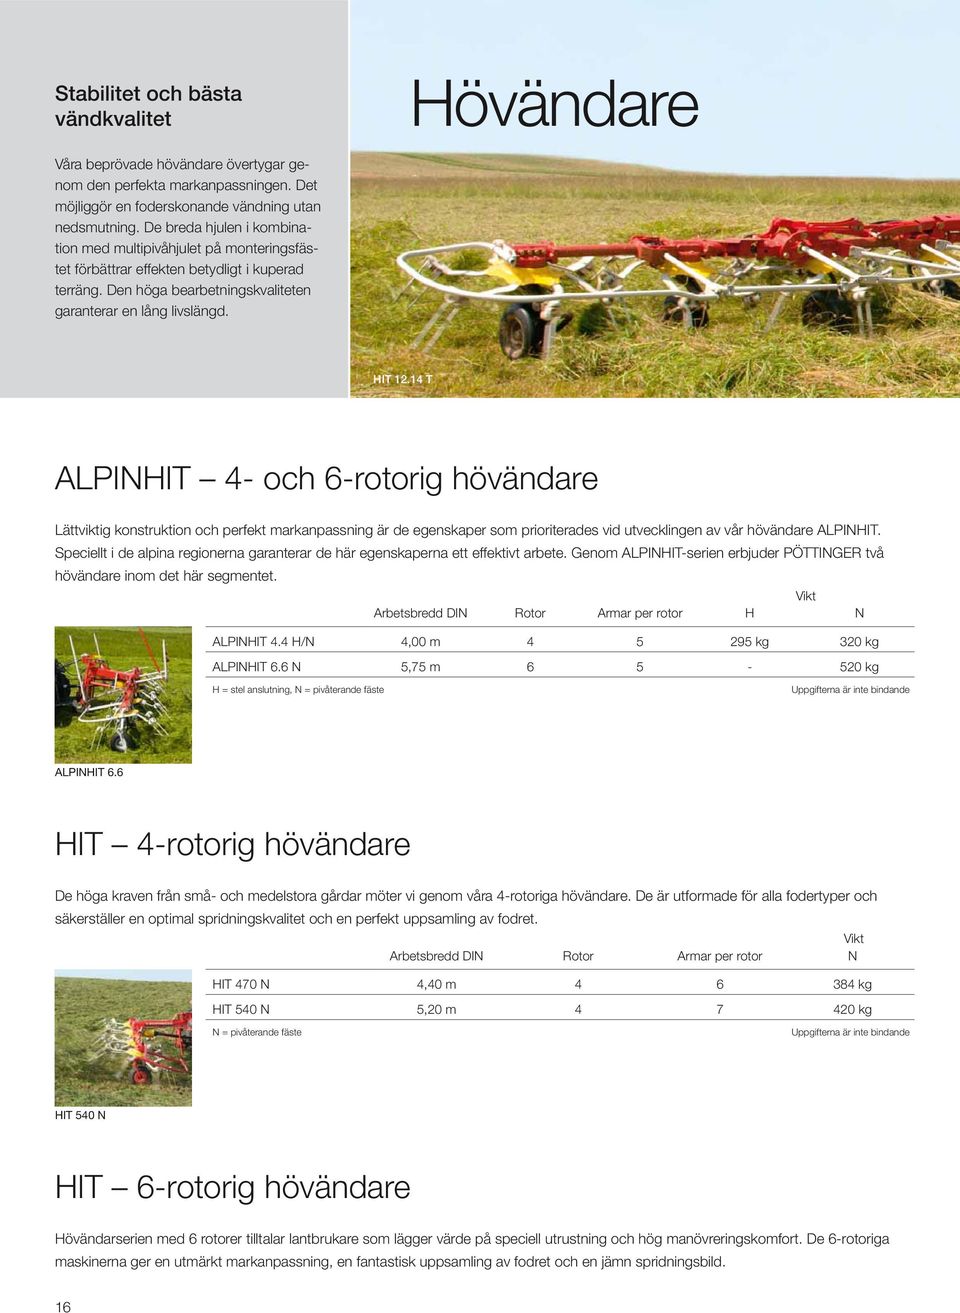 14 T ALPINHIT 4- och 6-rotorig hövändare Lättviktig konstruktion och perfekt markanpassning är de egenskaper som prioriterades vid utvecklingen av vår hövändare ALPINHIT.